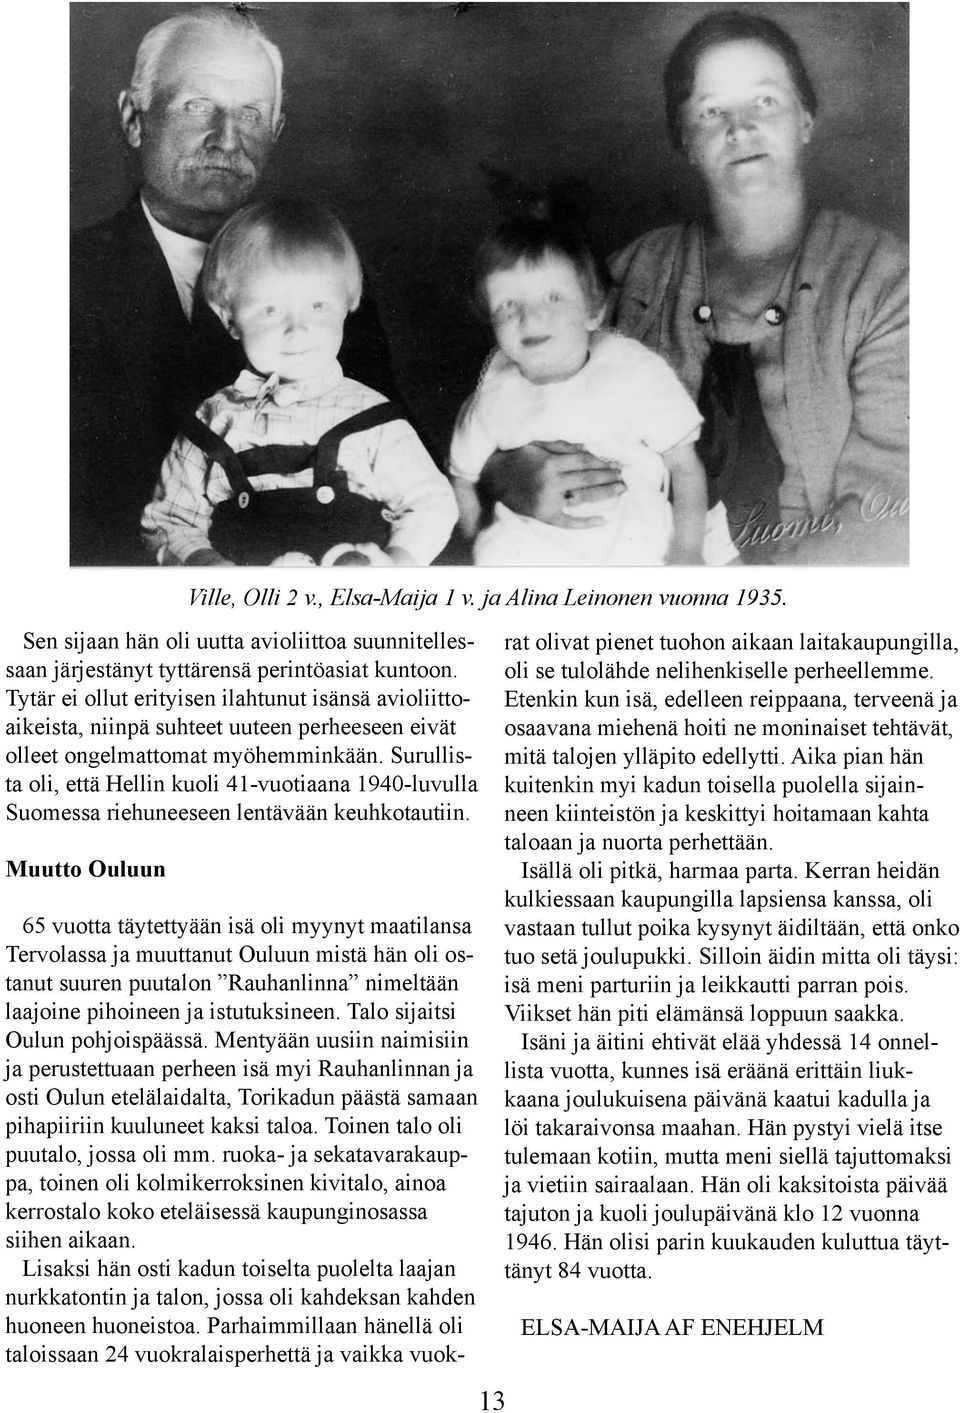 Surullista oli, että Hellin kuoli 41-vuotiaana 1940-luvulla Suomessa riehuneeseen lentävään keuhkotautiin. Muutto Ouluun Ville, Olli 2 v., Elsa-Maija 1 v. ja Alina Leinonen vuonna 1935.